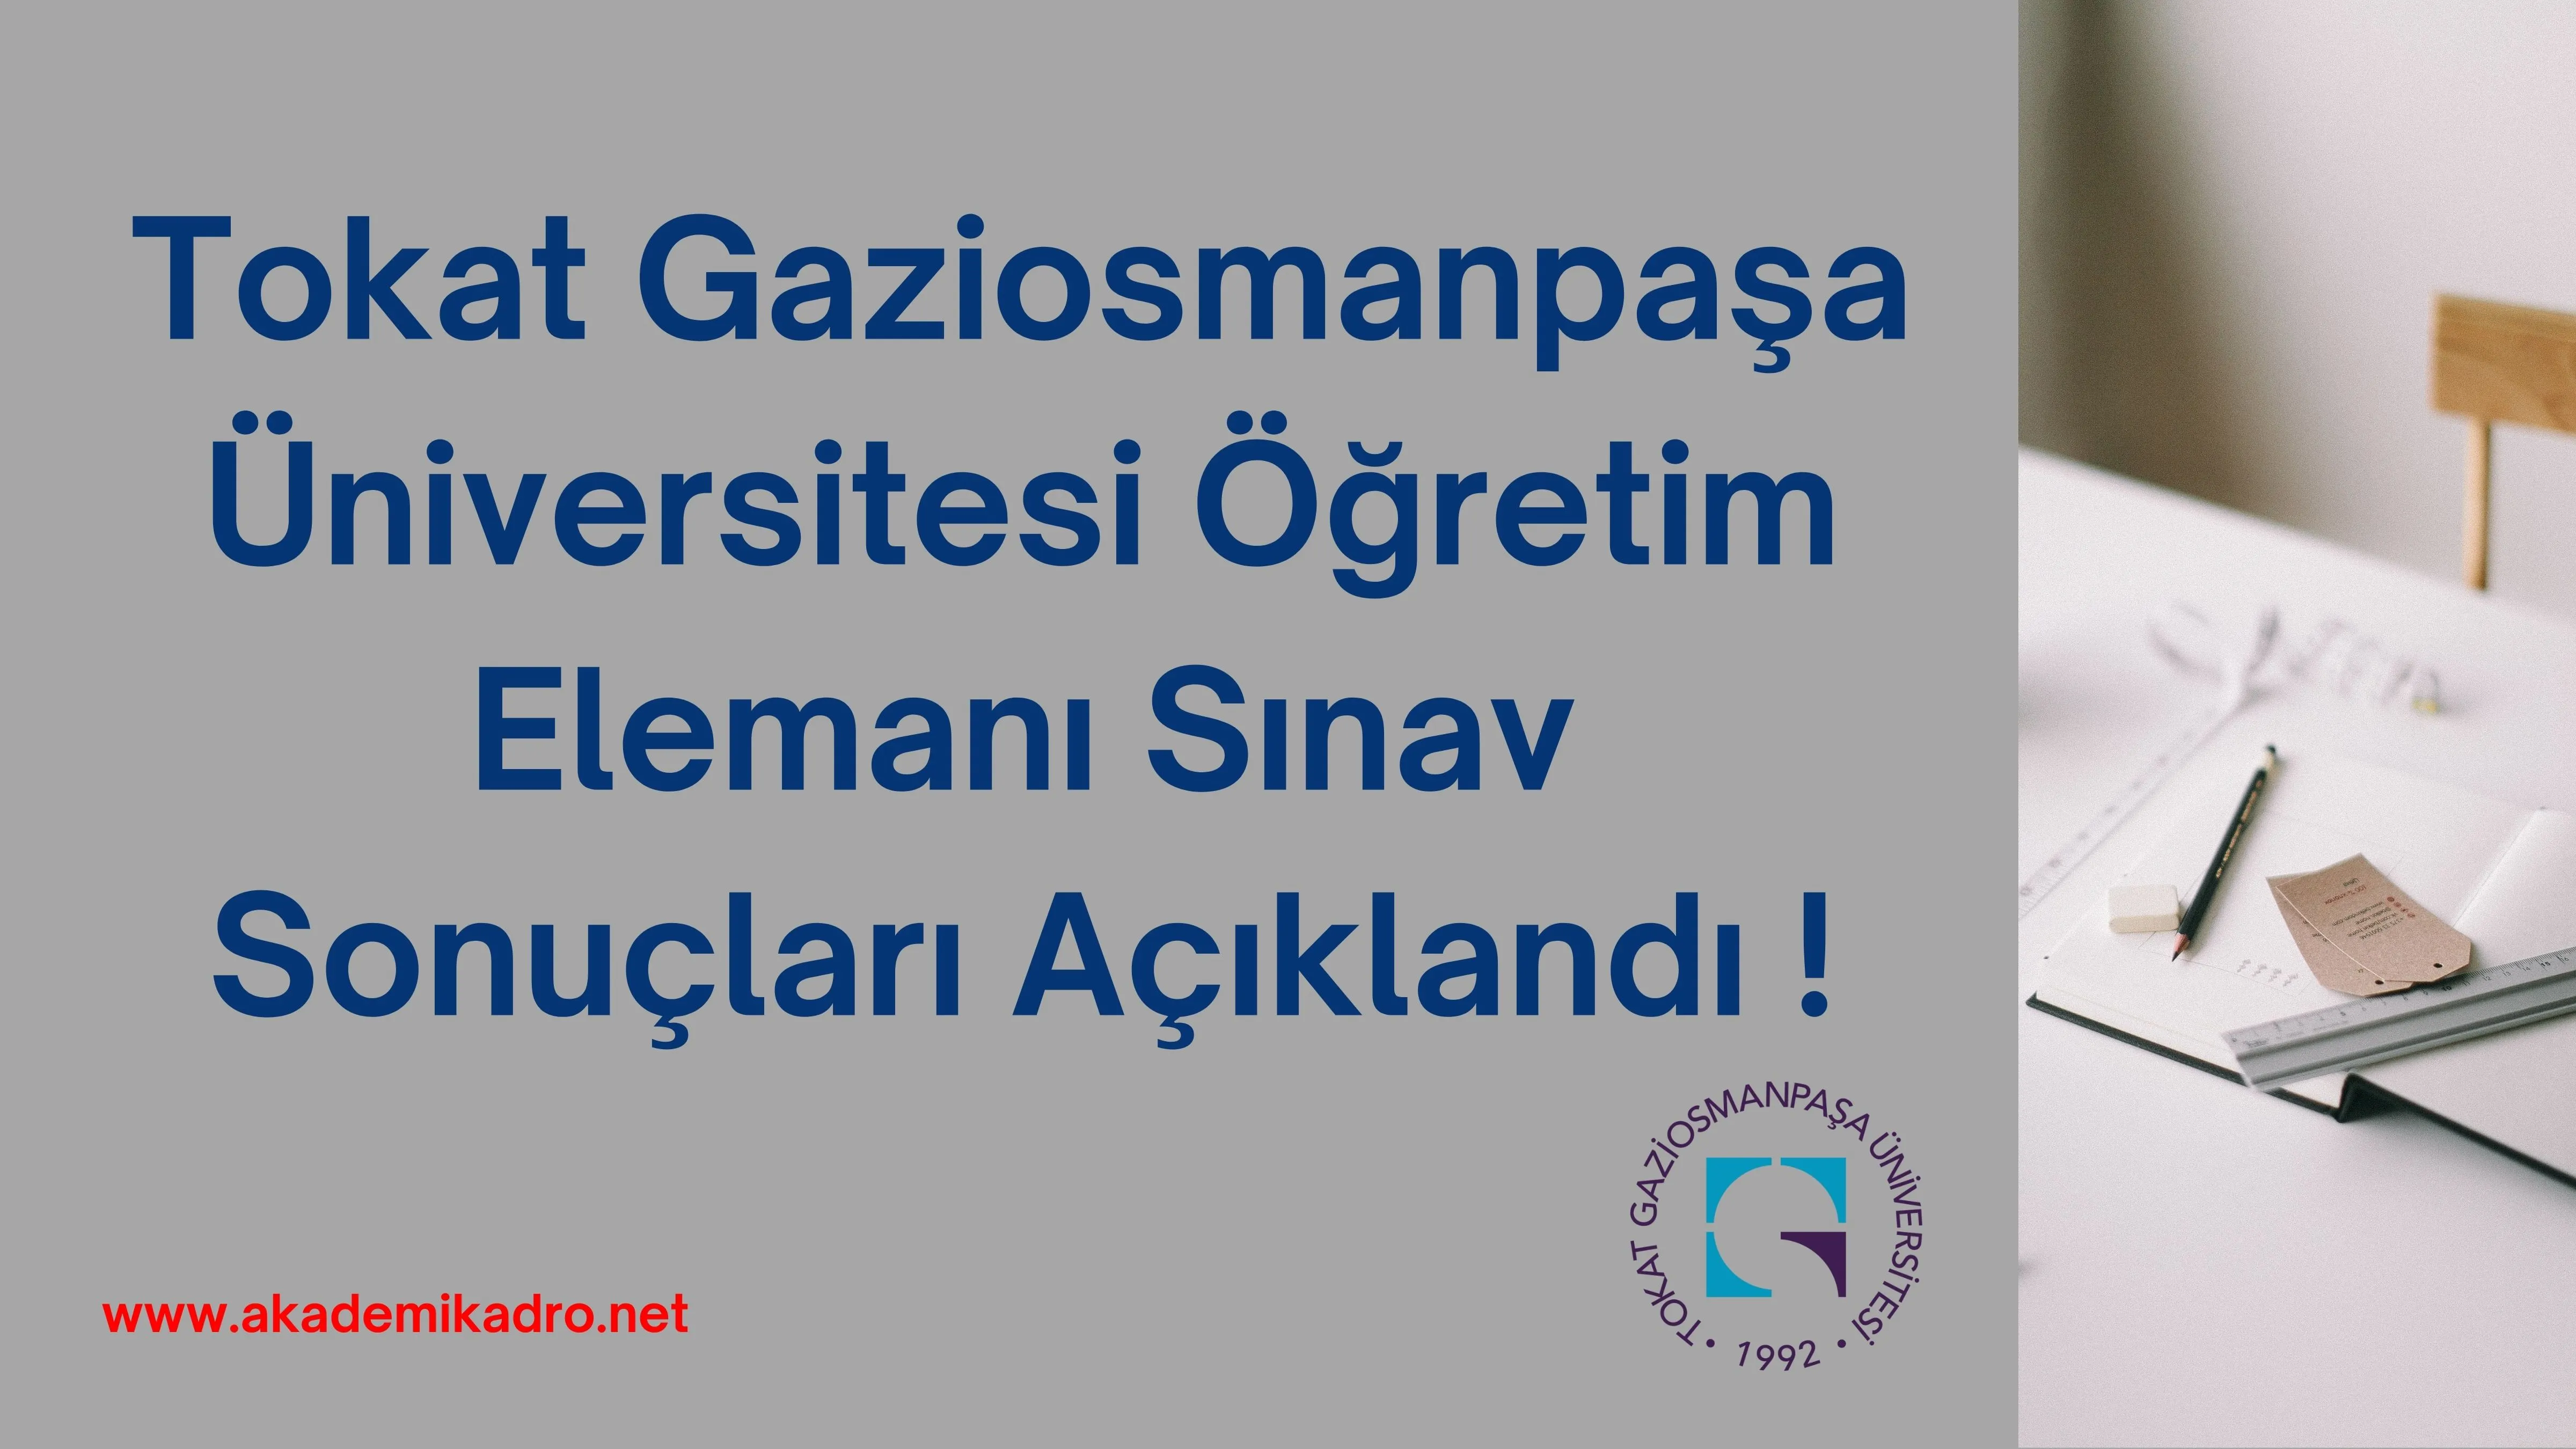 Tokat Gaziosmanpaşa Üniversitesi 23 Eylül 2022 tarihinde ilan edilen Öğretim görevlisi ilanı sınav sonuçları açıklandı !